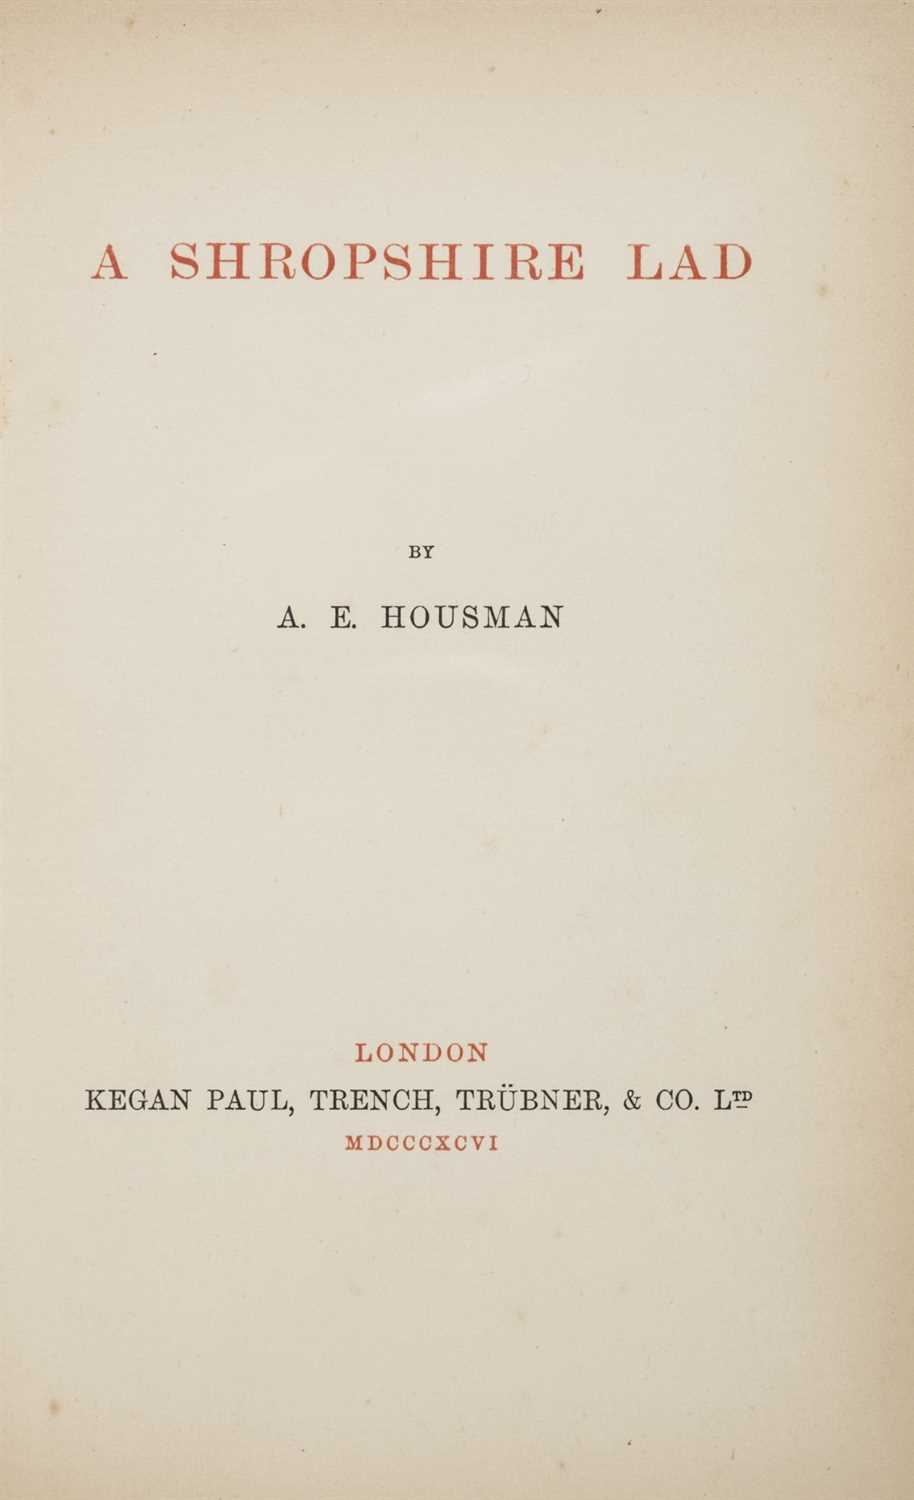 Lot 92 - Housman, A.E.